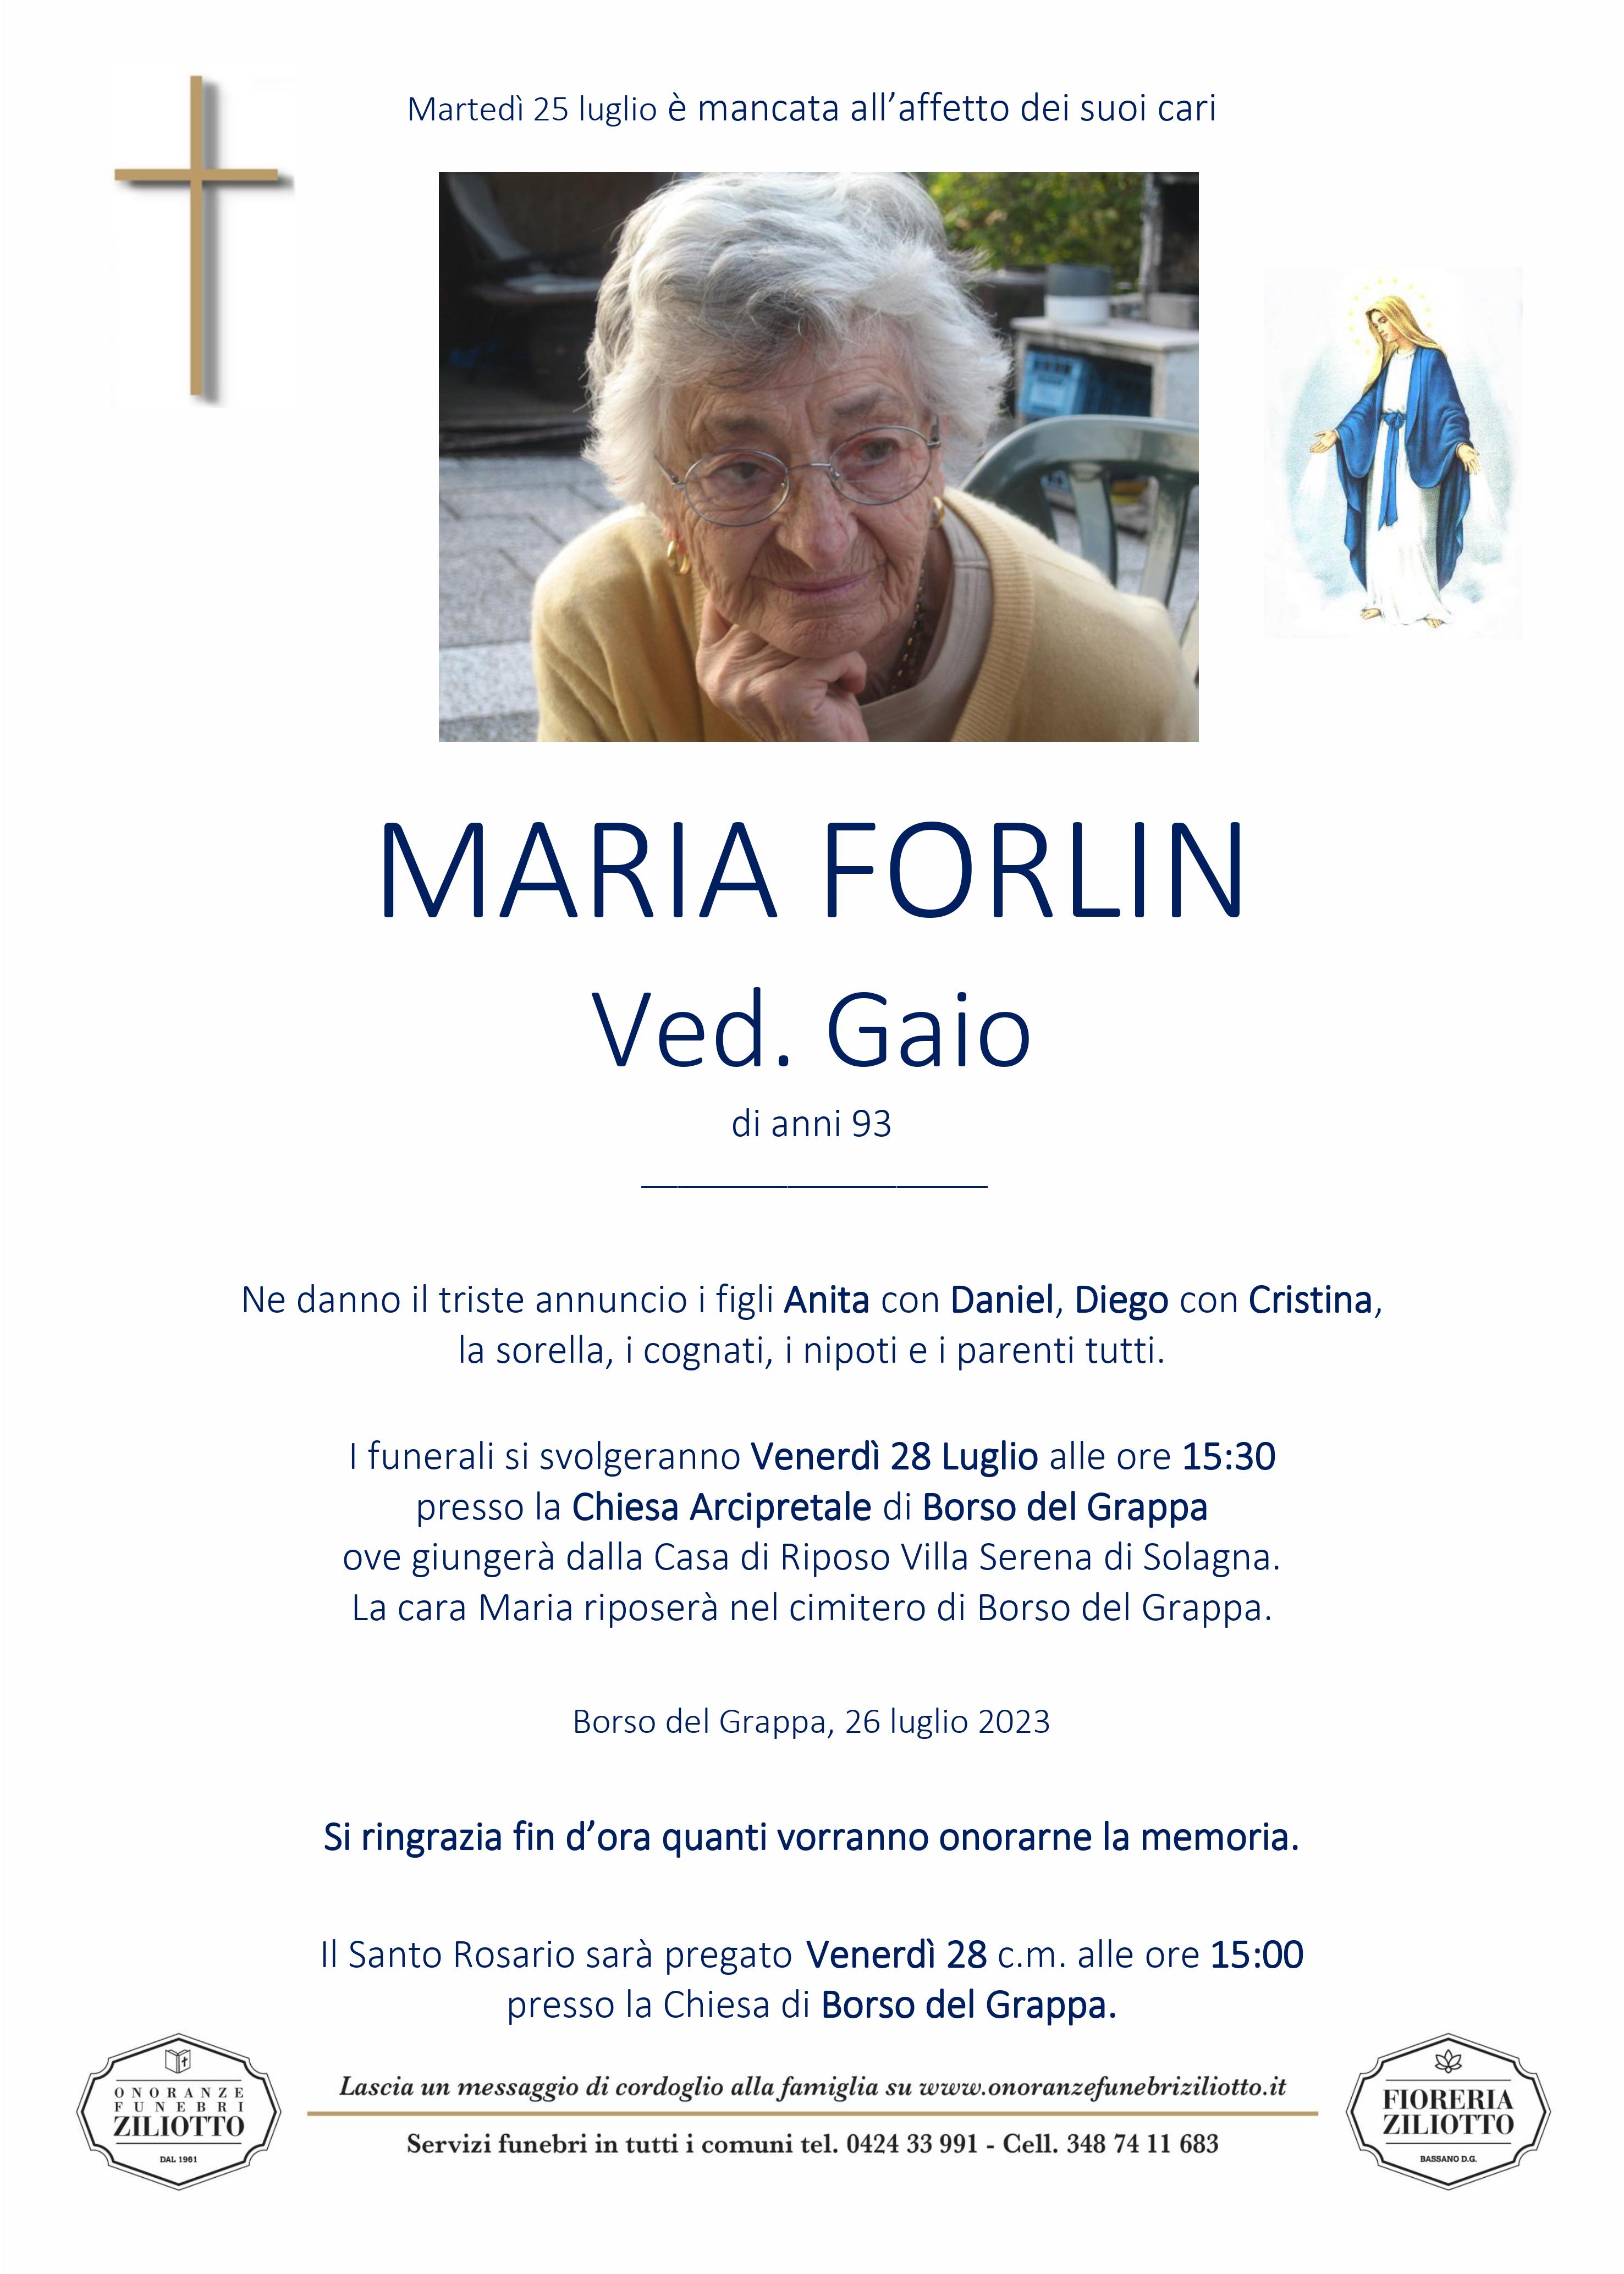 Maria Forlin - 93 anni - Borso del Grappa